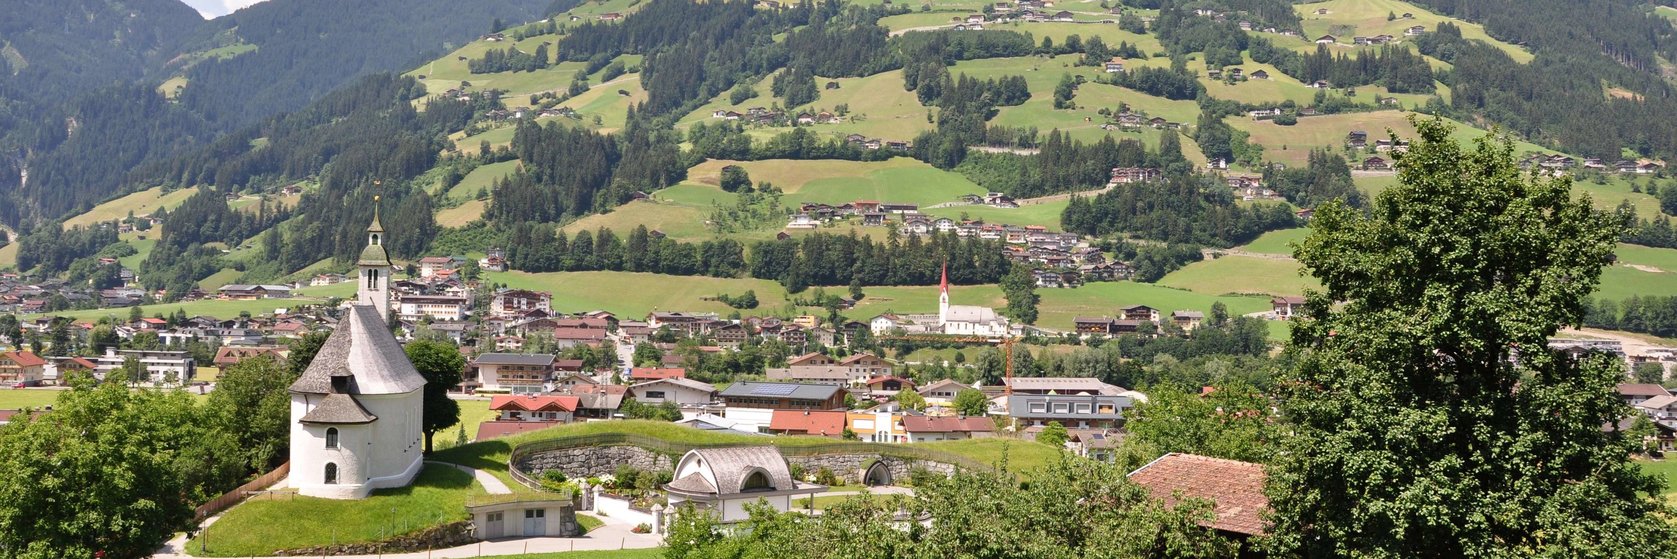 Ubytování Ramsau im Zillertal